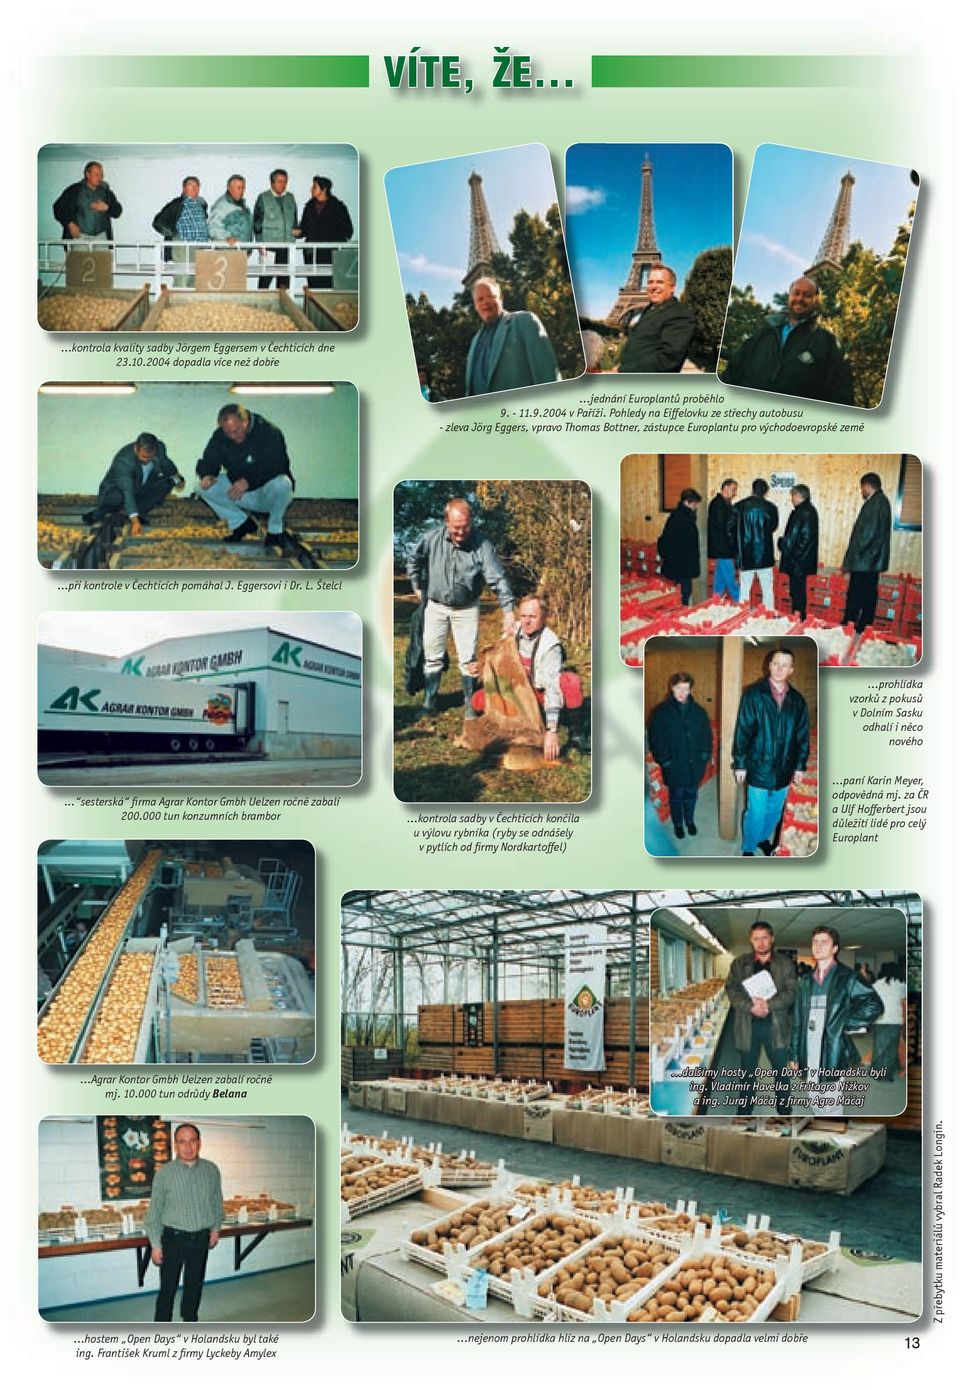 ..prohlídka vzorků z pokusů v Dolním Sasku odhalí i něco nového... sesterská firma Agrar Kontor Gmbh Uelzen ročně zabalí 200.000 tun konzumních brambor.